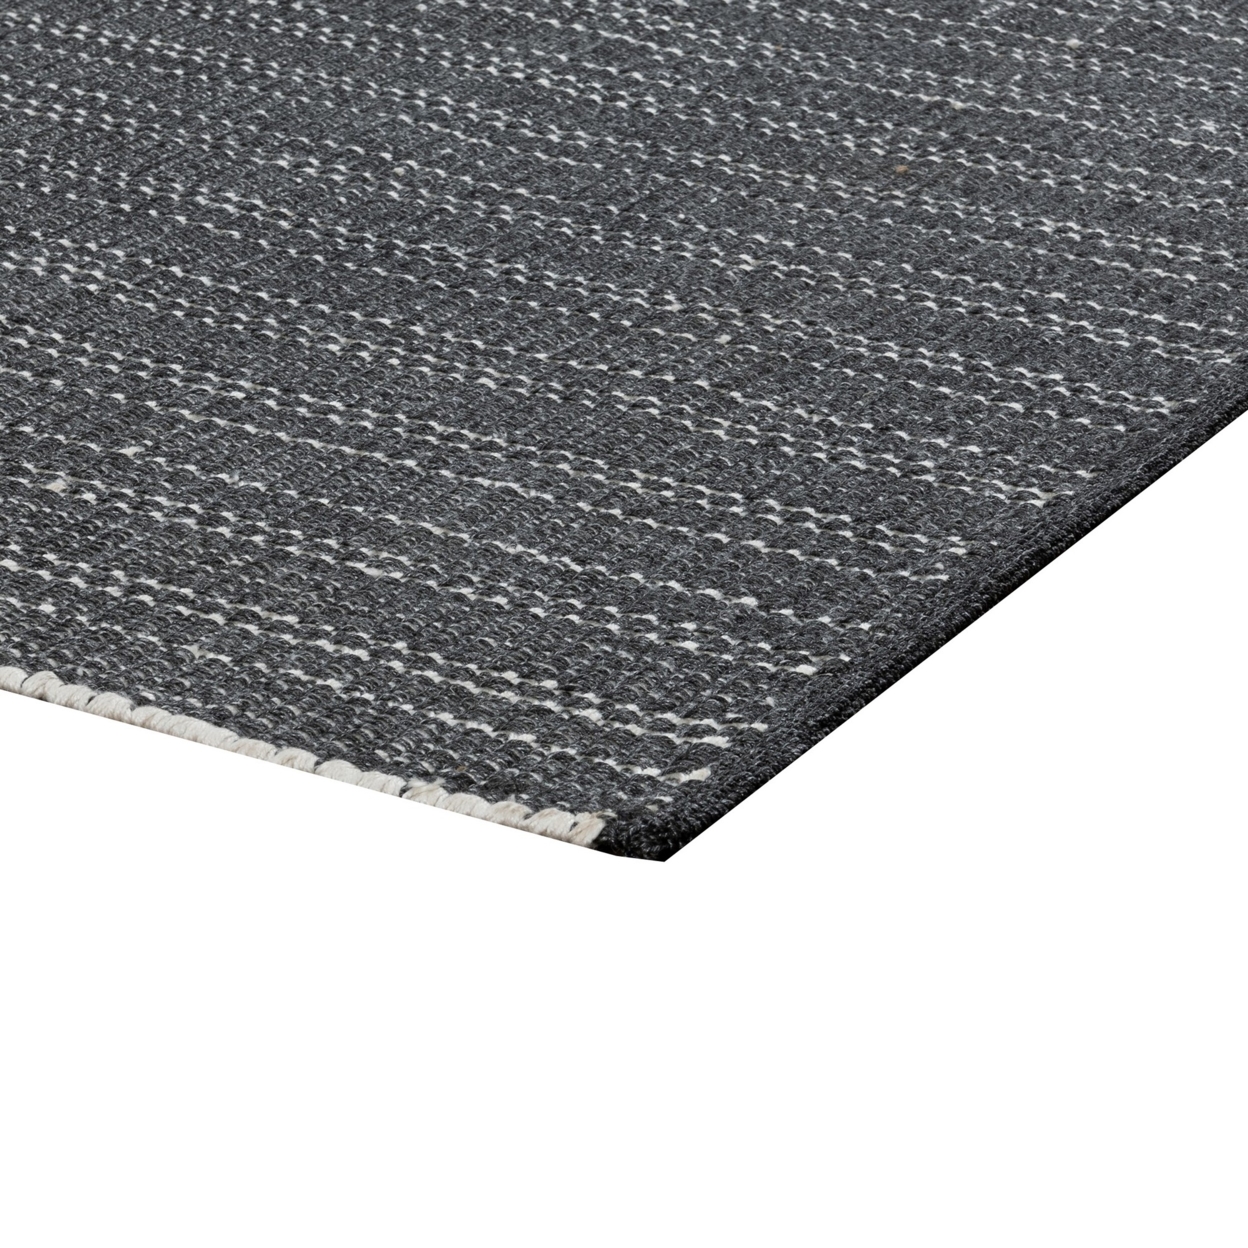 Leah 2 X 3 Indoor Outdoor Area Rug, Handwoven Classic Texture Charcoal Gray- Saltoro Sherpi